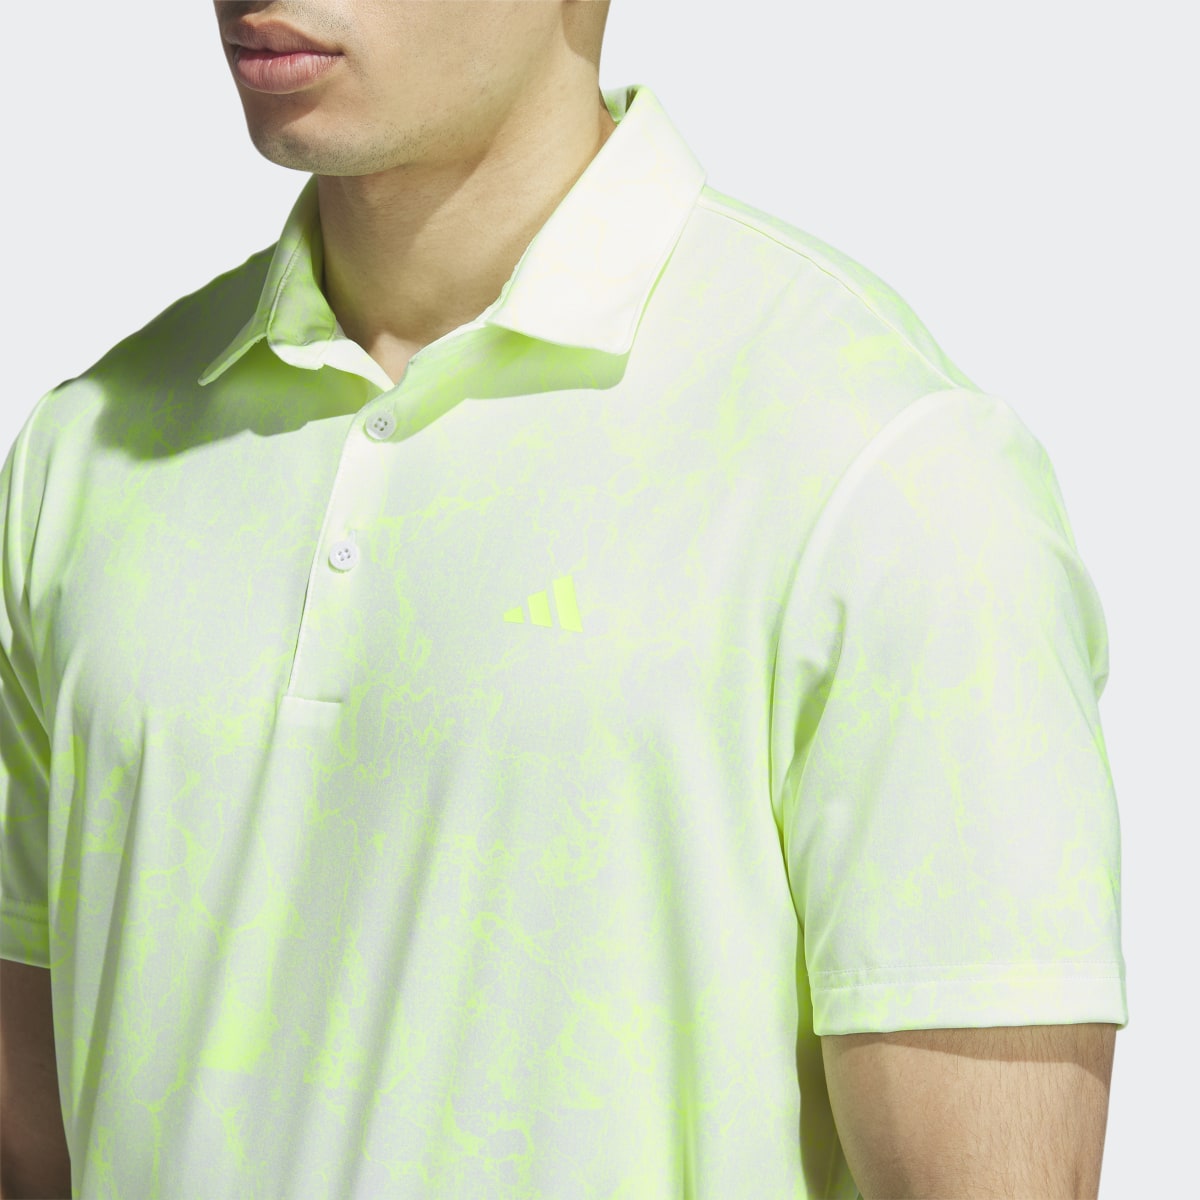 Adidas Ultimate365 Print Golf Polo Shirt. 7